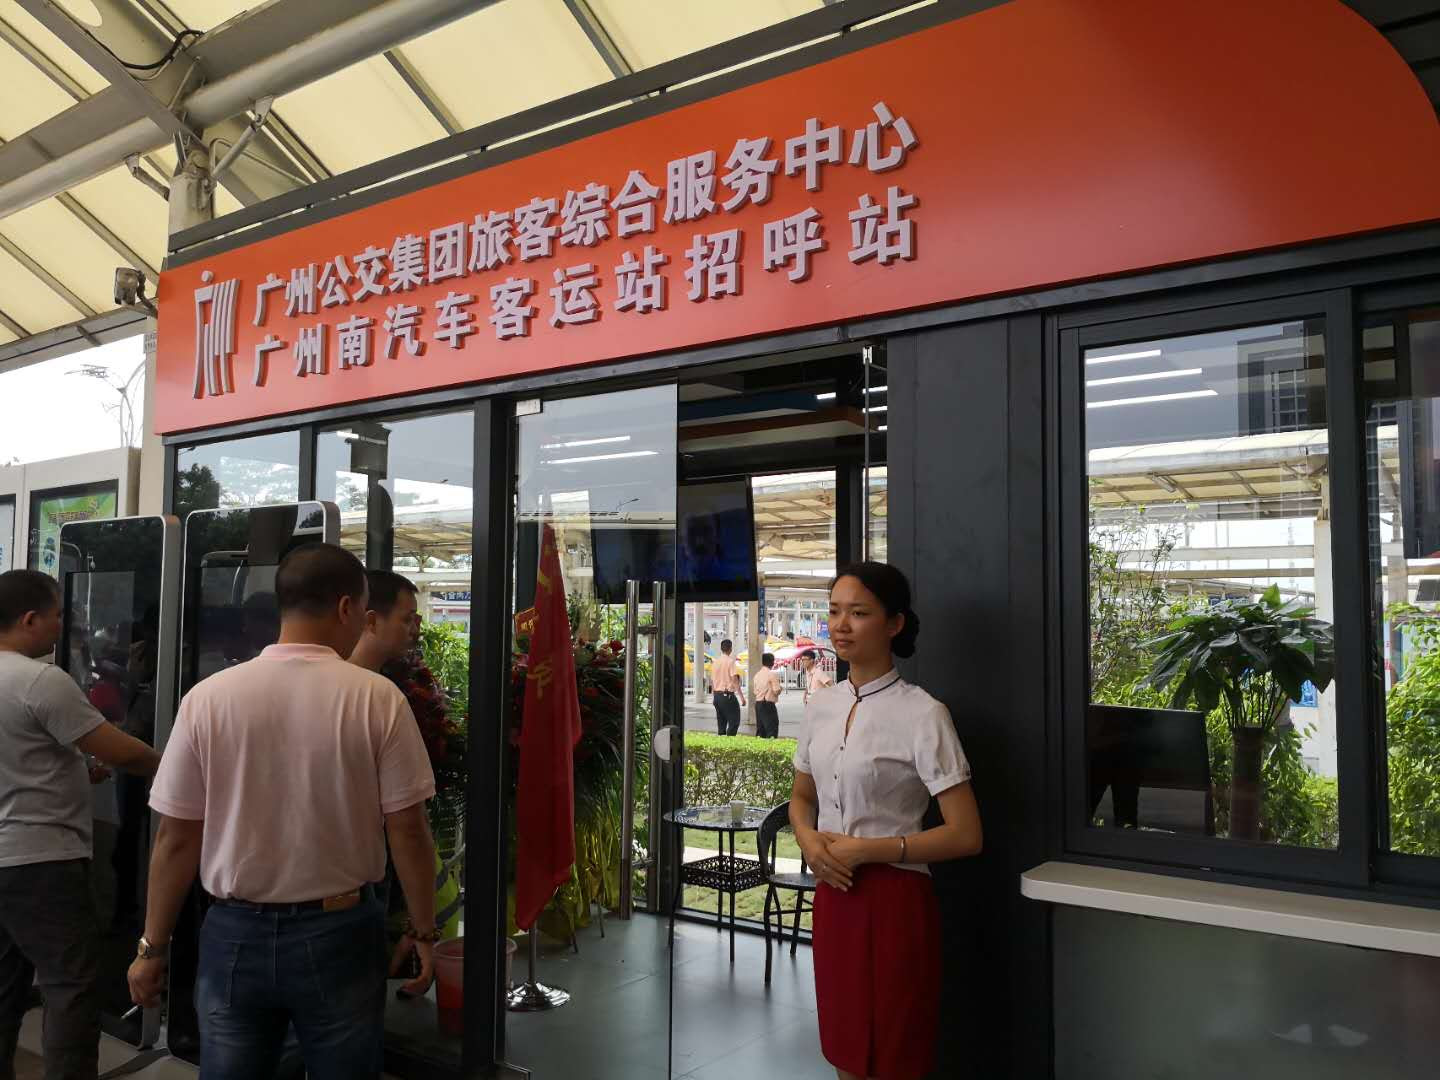 廣州公交集團在廣州南站設置綜合服務中心與招呼站，為廣深港高鐵等旅客提供“無縫接駁”服務。